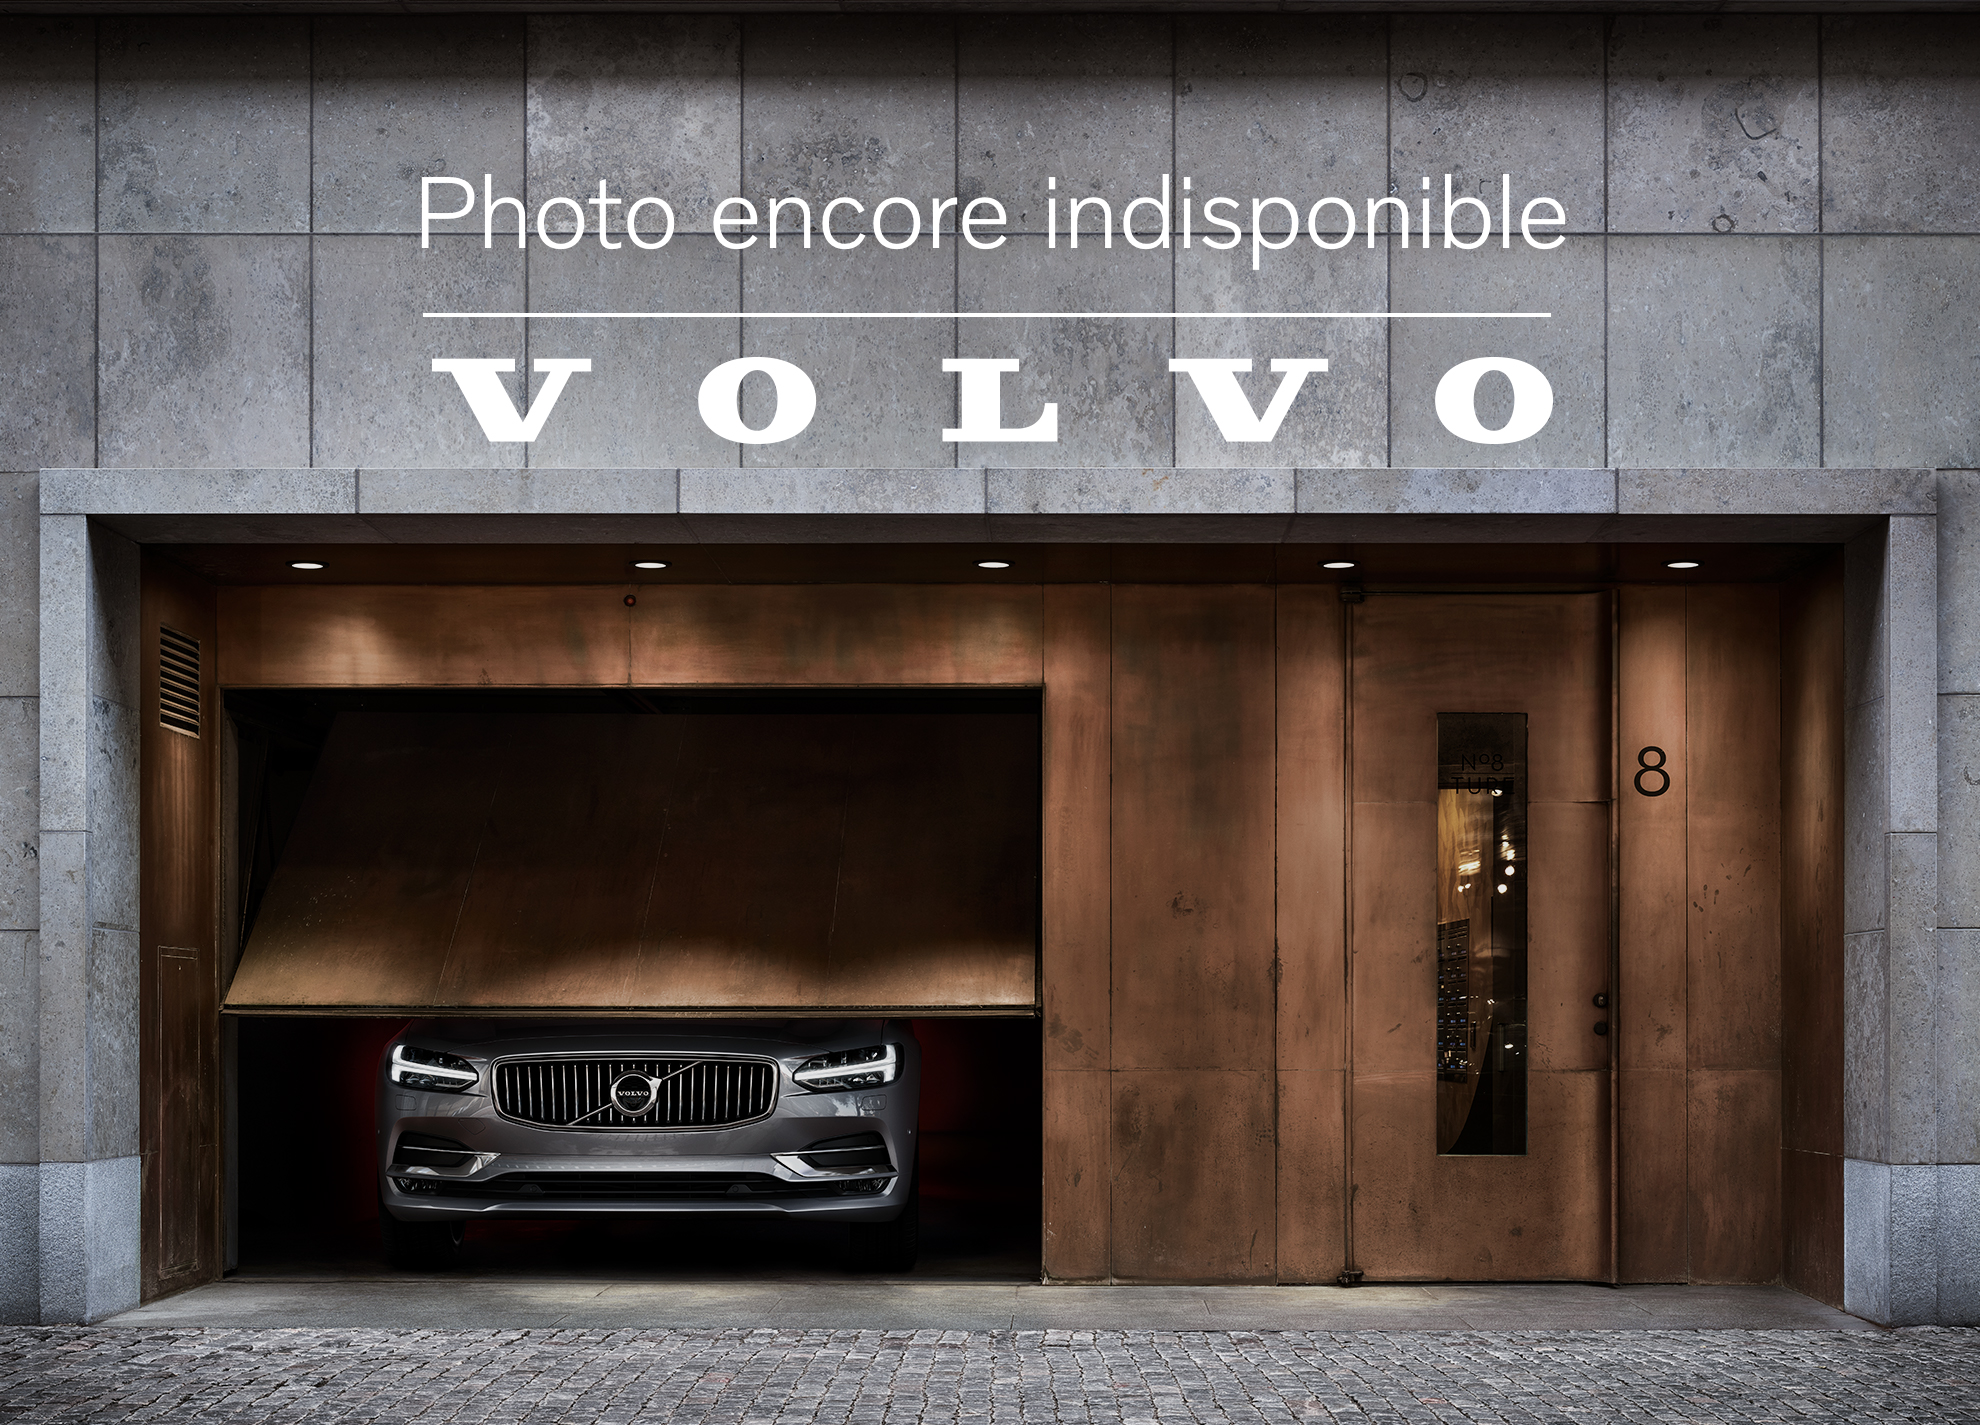 Volvo  T6 AWD Momentum